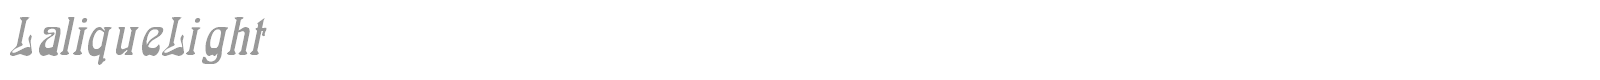 LaliqueLight font preview